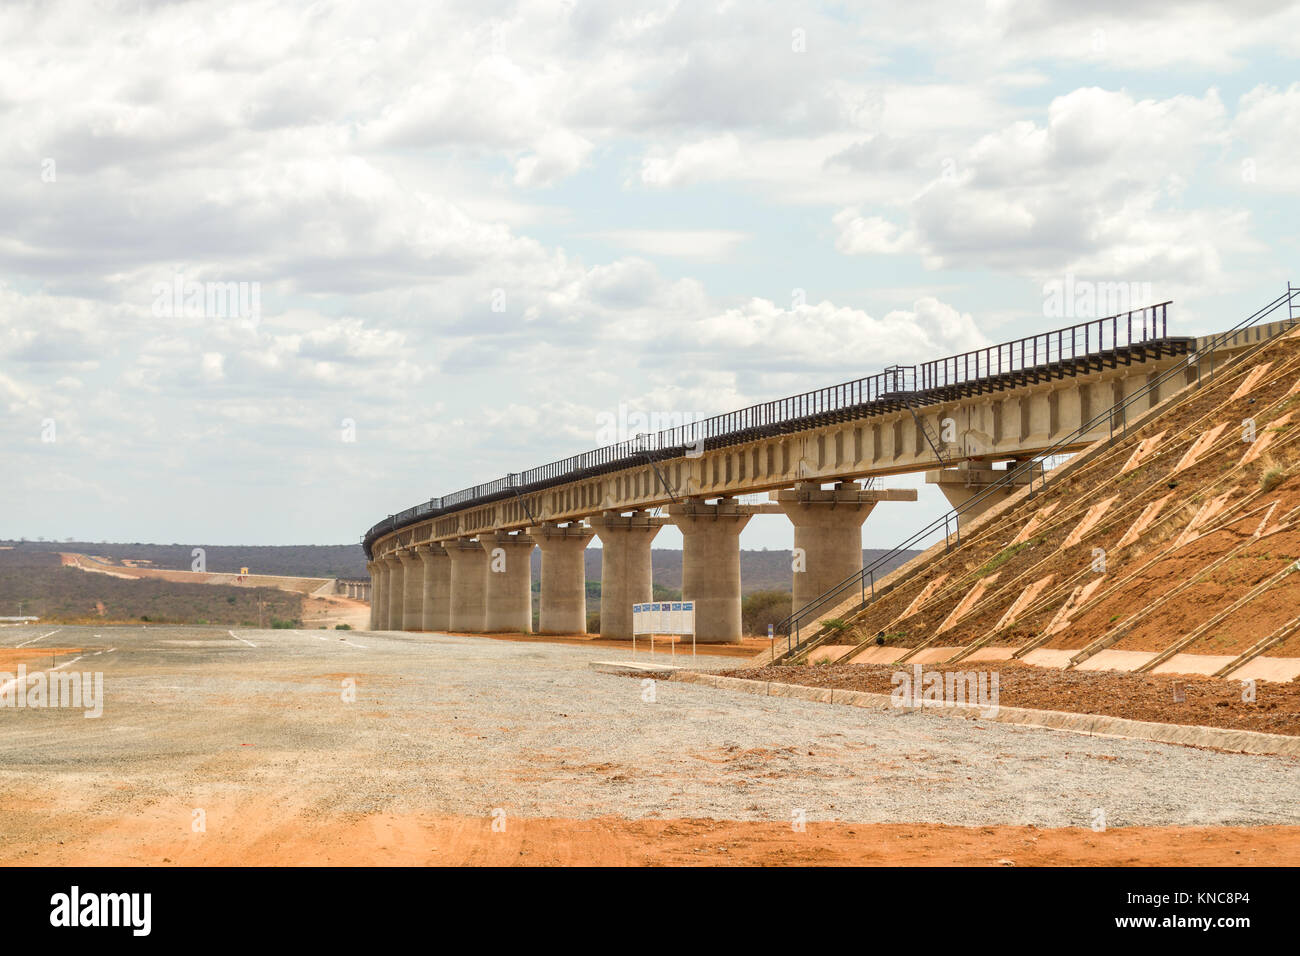 Parte di Mombasa a Nairobi del calibratore standard ferroviario costruito di recente nel Tsavo, un viadotto è stato costruito per consentire agli animali di passare attraverso, Kenya, Foto Stock